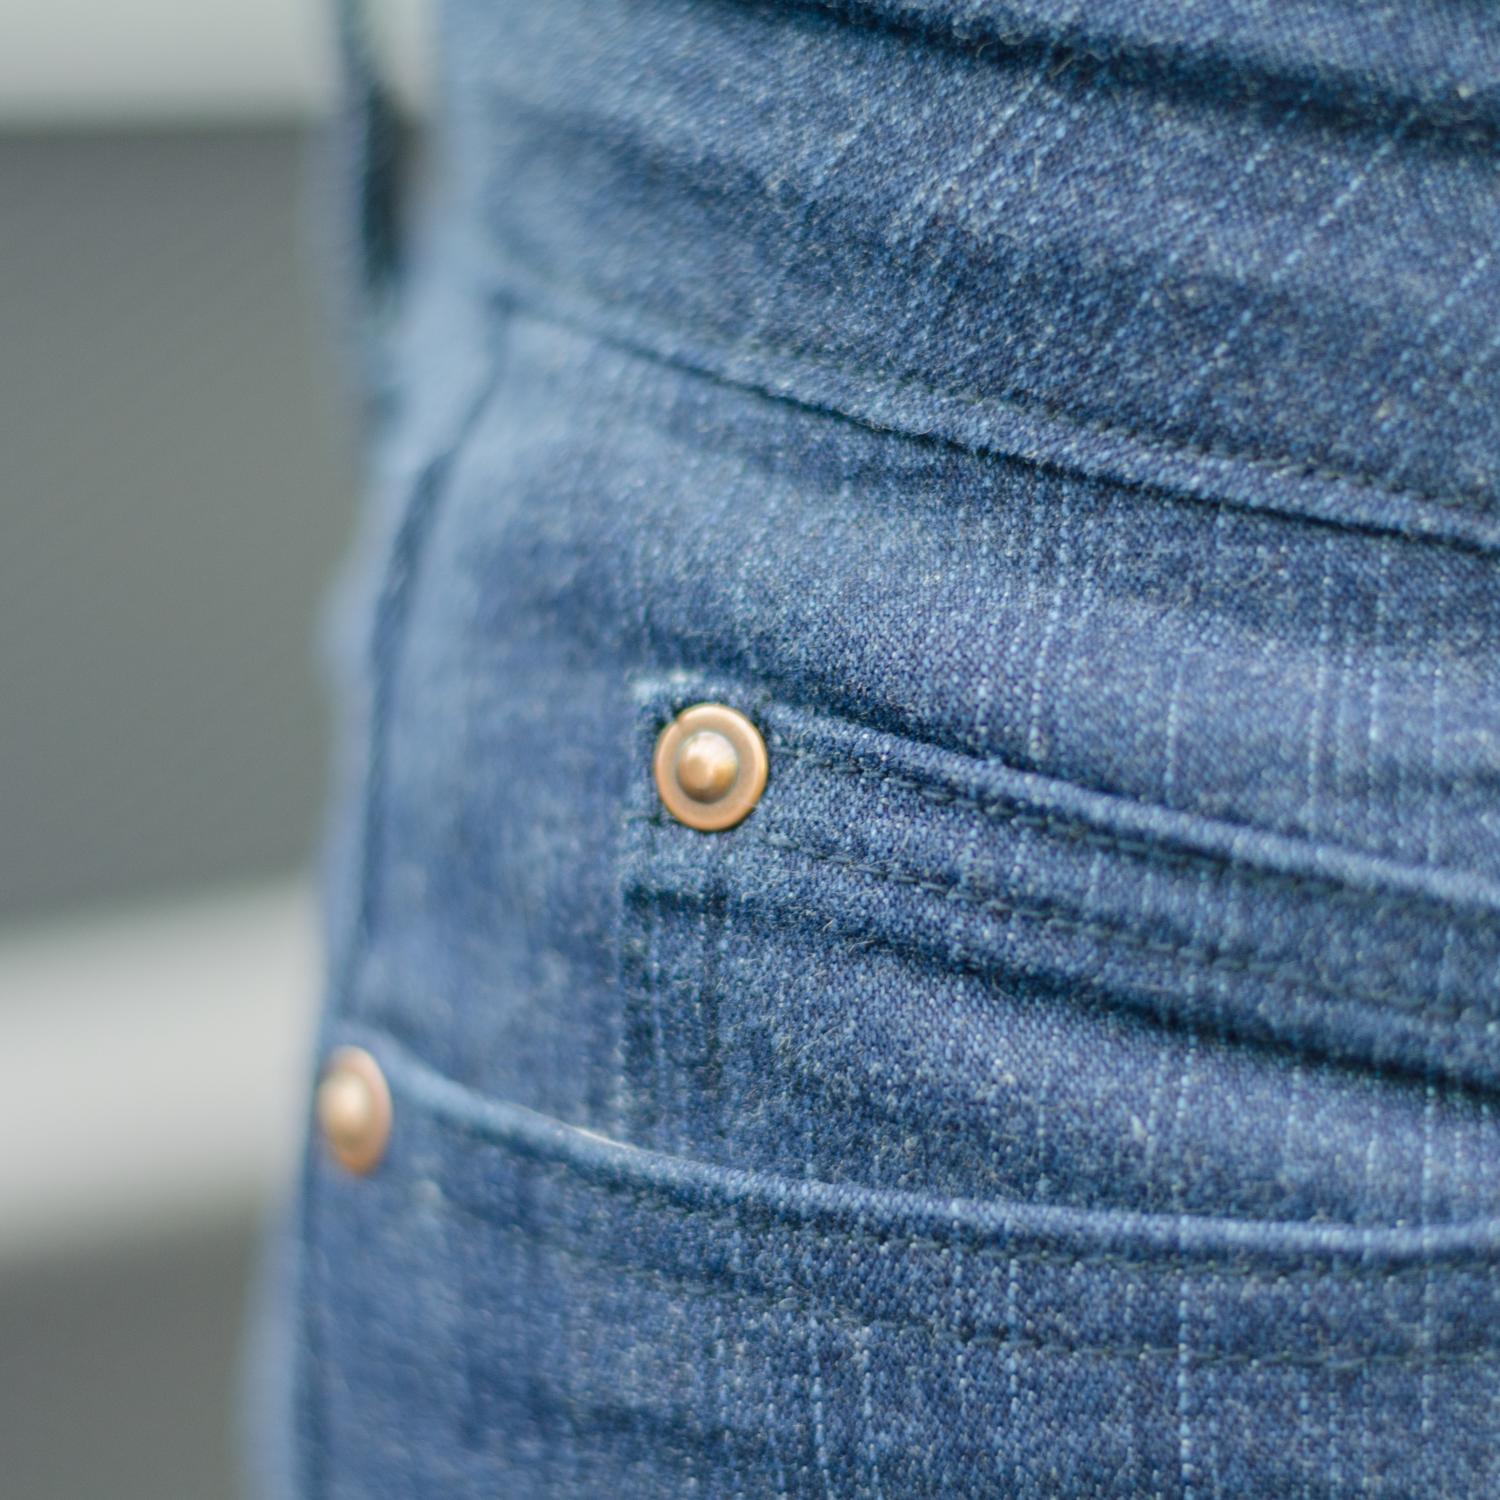 Jeans nähen, Schnittmuster Ginger Jeans von Closet Case Patterns, mit Jeans-Nieten (denim rivets) an den Taschenecken